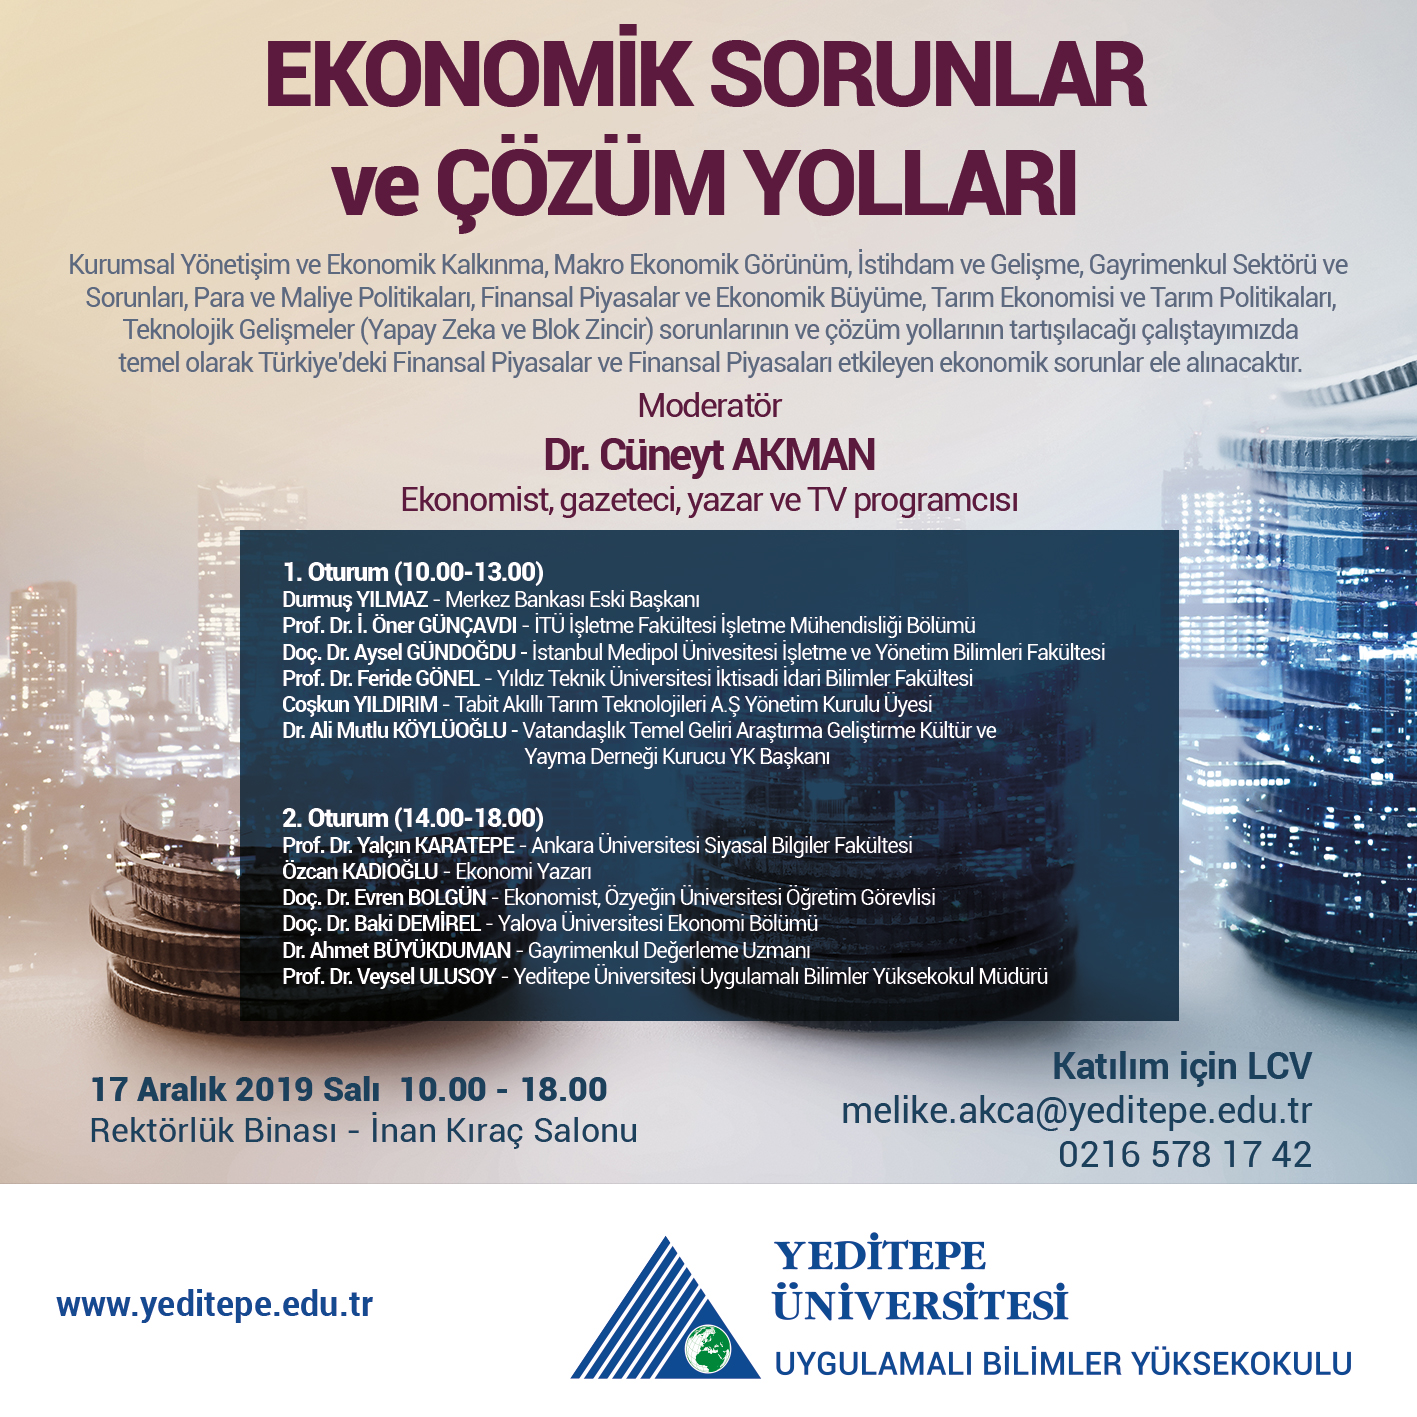 Türkiye’nin Önde Gelen Ekonomistleri ve Akademisyenleri Yeditepe Üniversitesi’nde Bir Araya Geliyor!